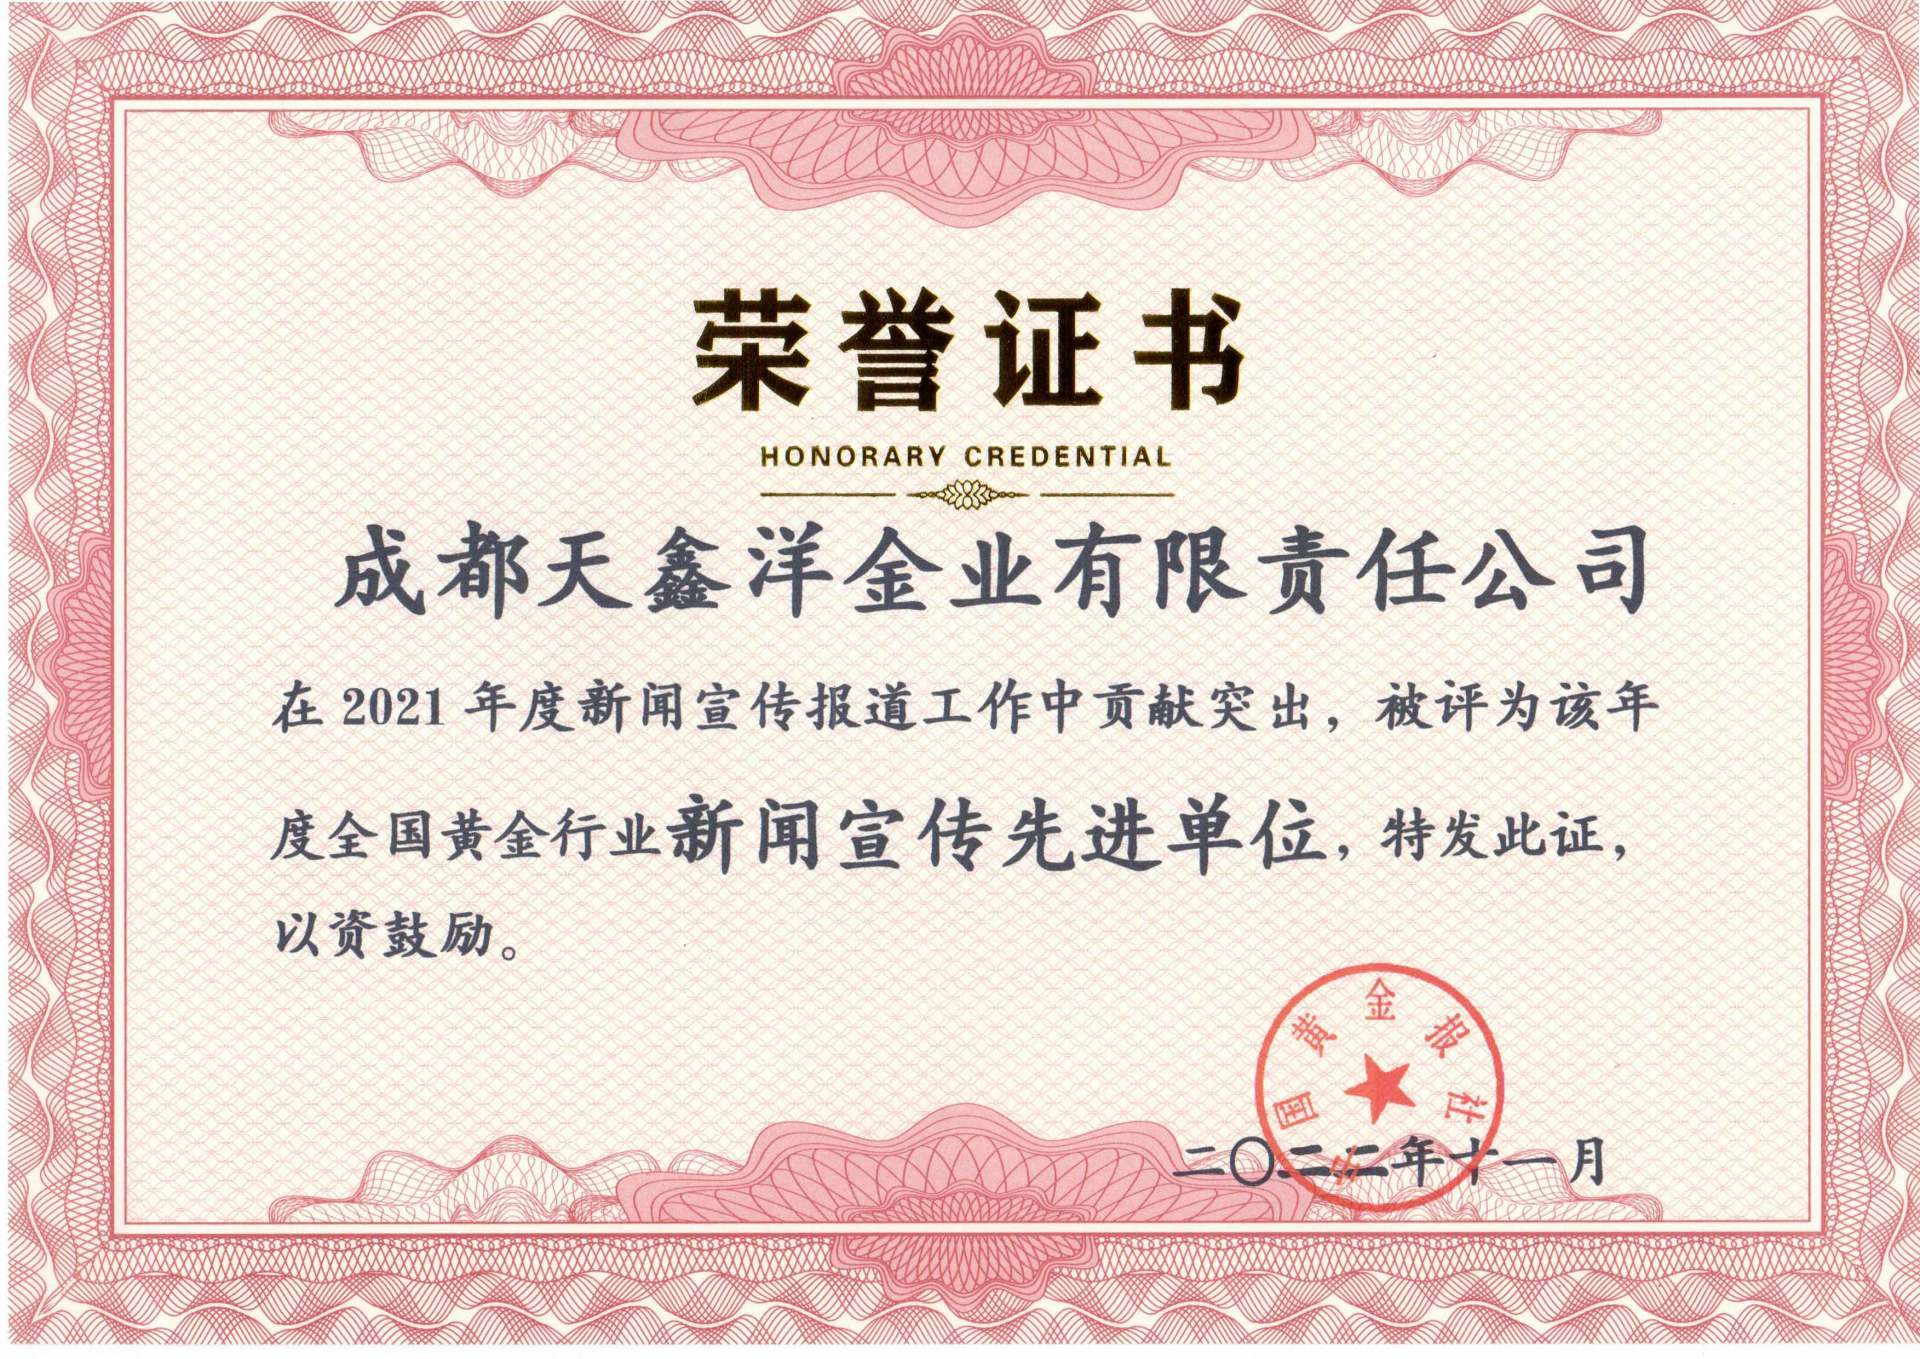 In December 2022, Tianxinyang won the honor of 